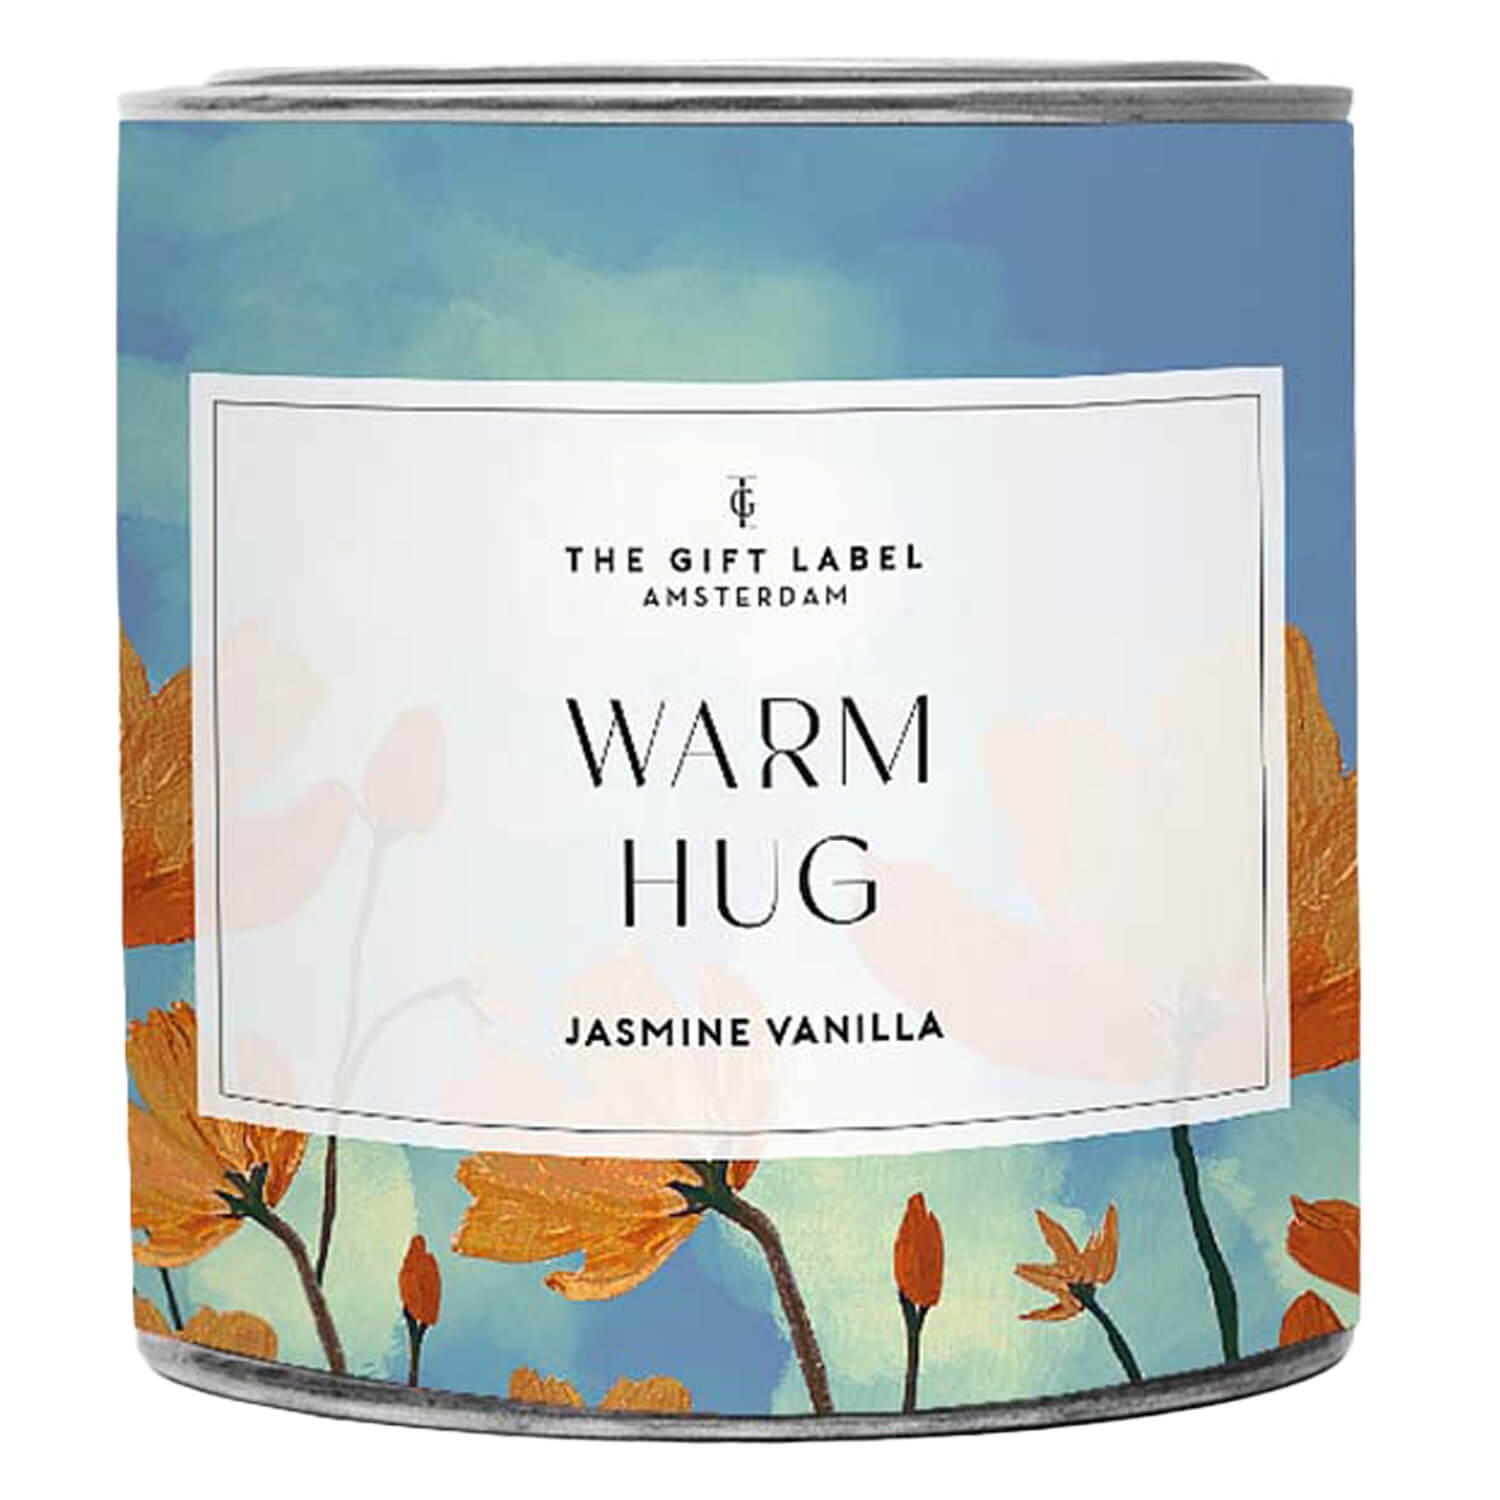 Produktbild von TGL Home - Candle Jasmine Vanilla Warm Hug (310g)